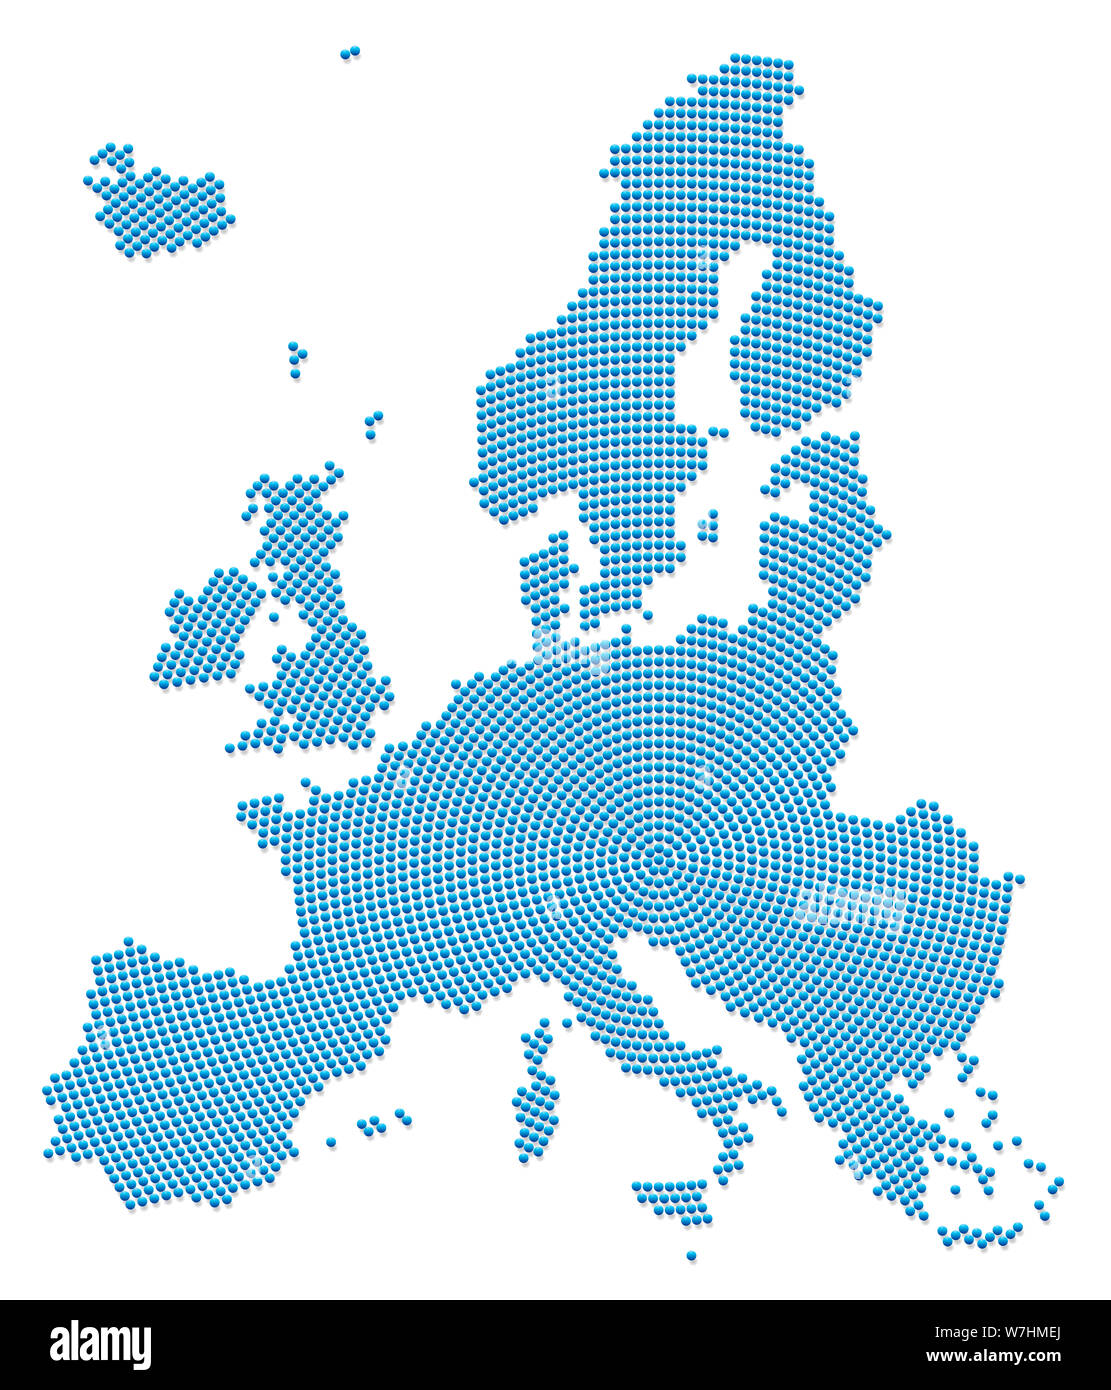 Mappa dell'Europa. Modello di colore blu con 3d perline di ferro andando verso l'esterno radiale dal centro per formare la sagoma dell'area UE . illustrazione sul bianco. Foto Stock